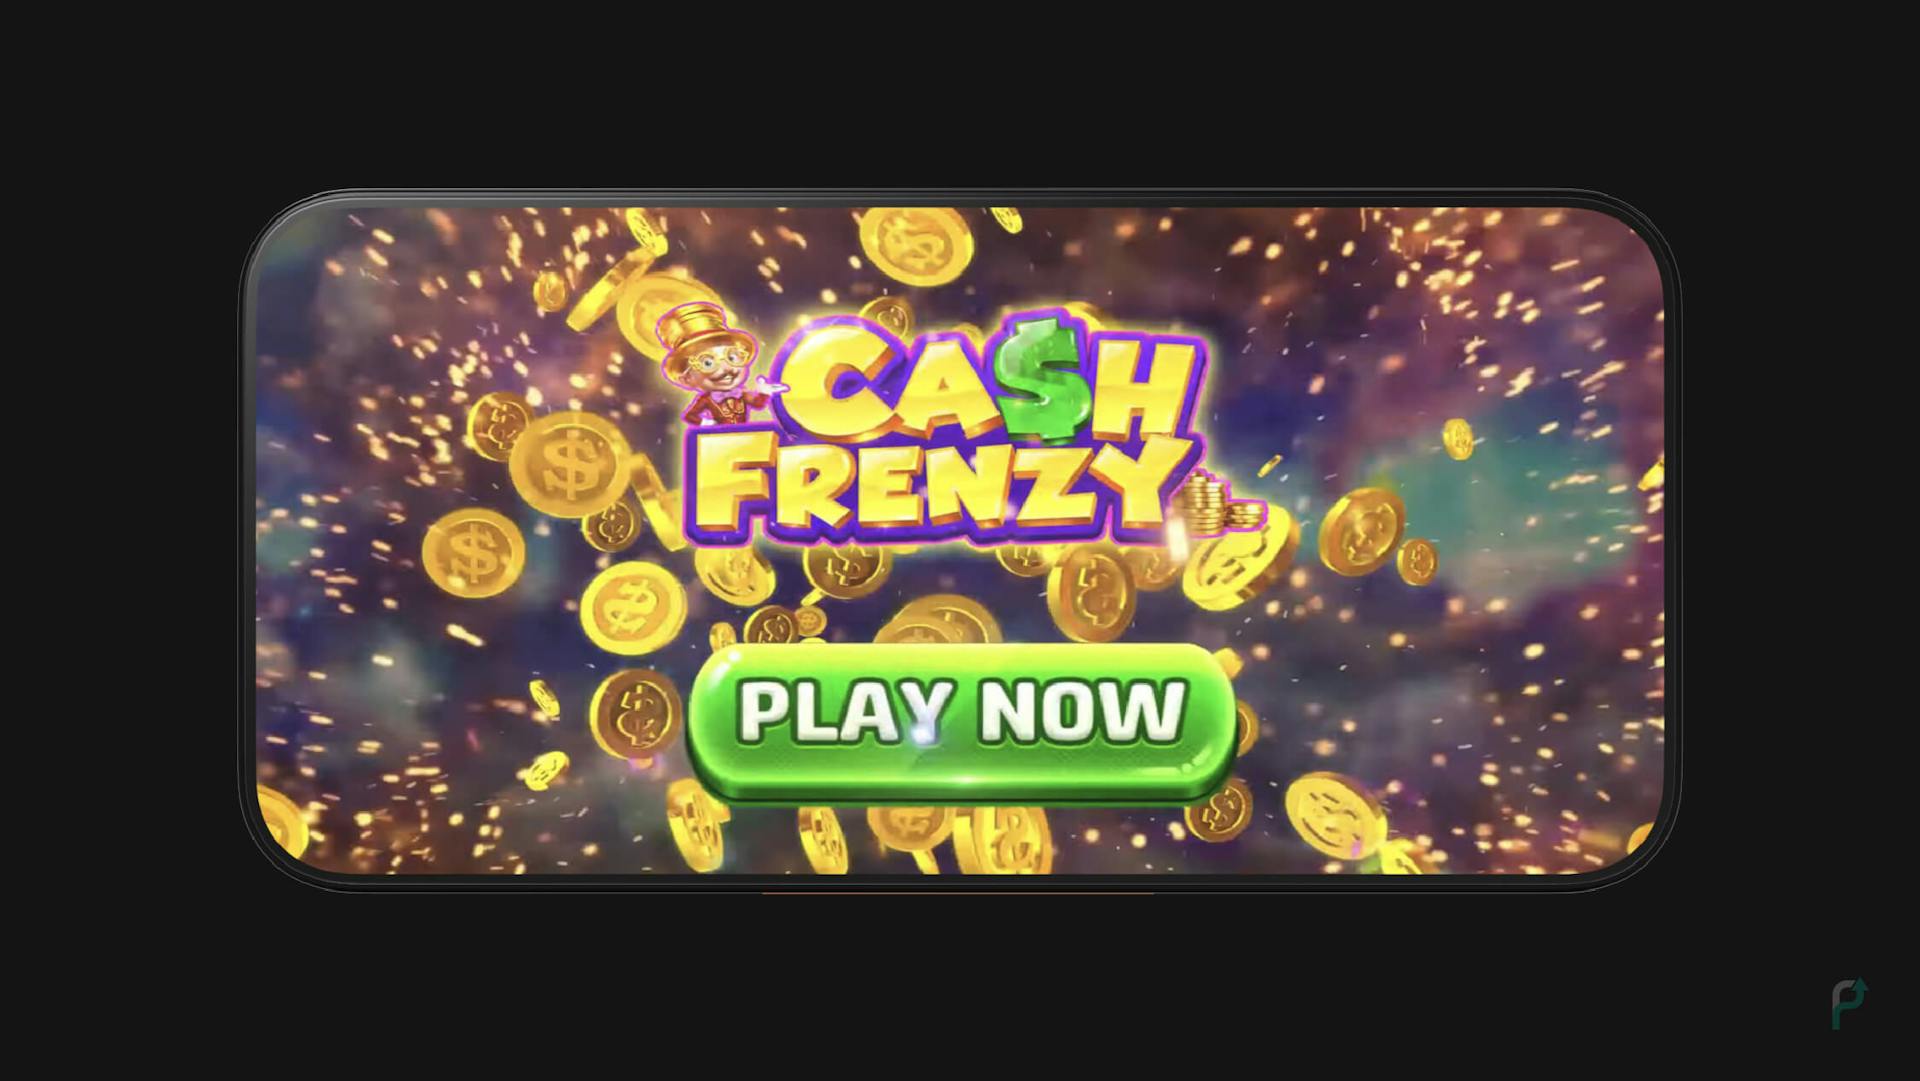 Cash frenzy